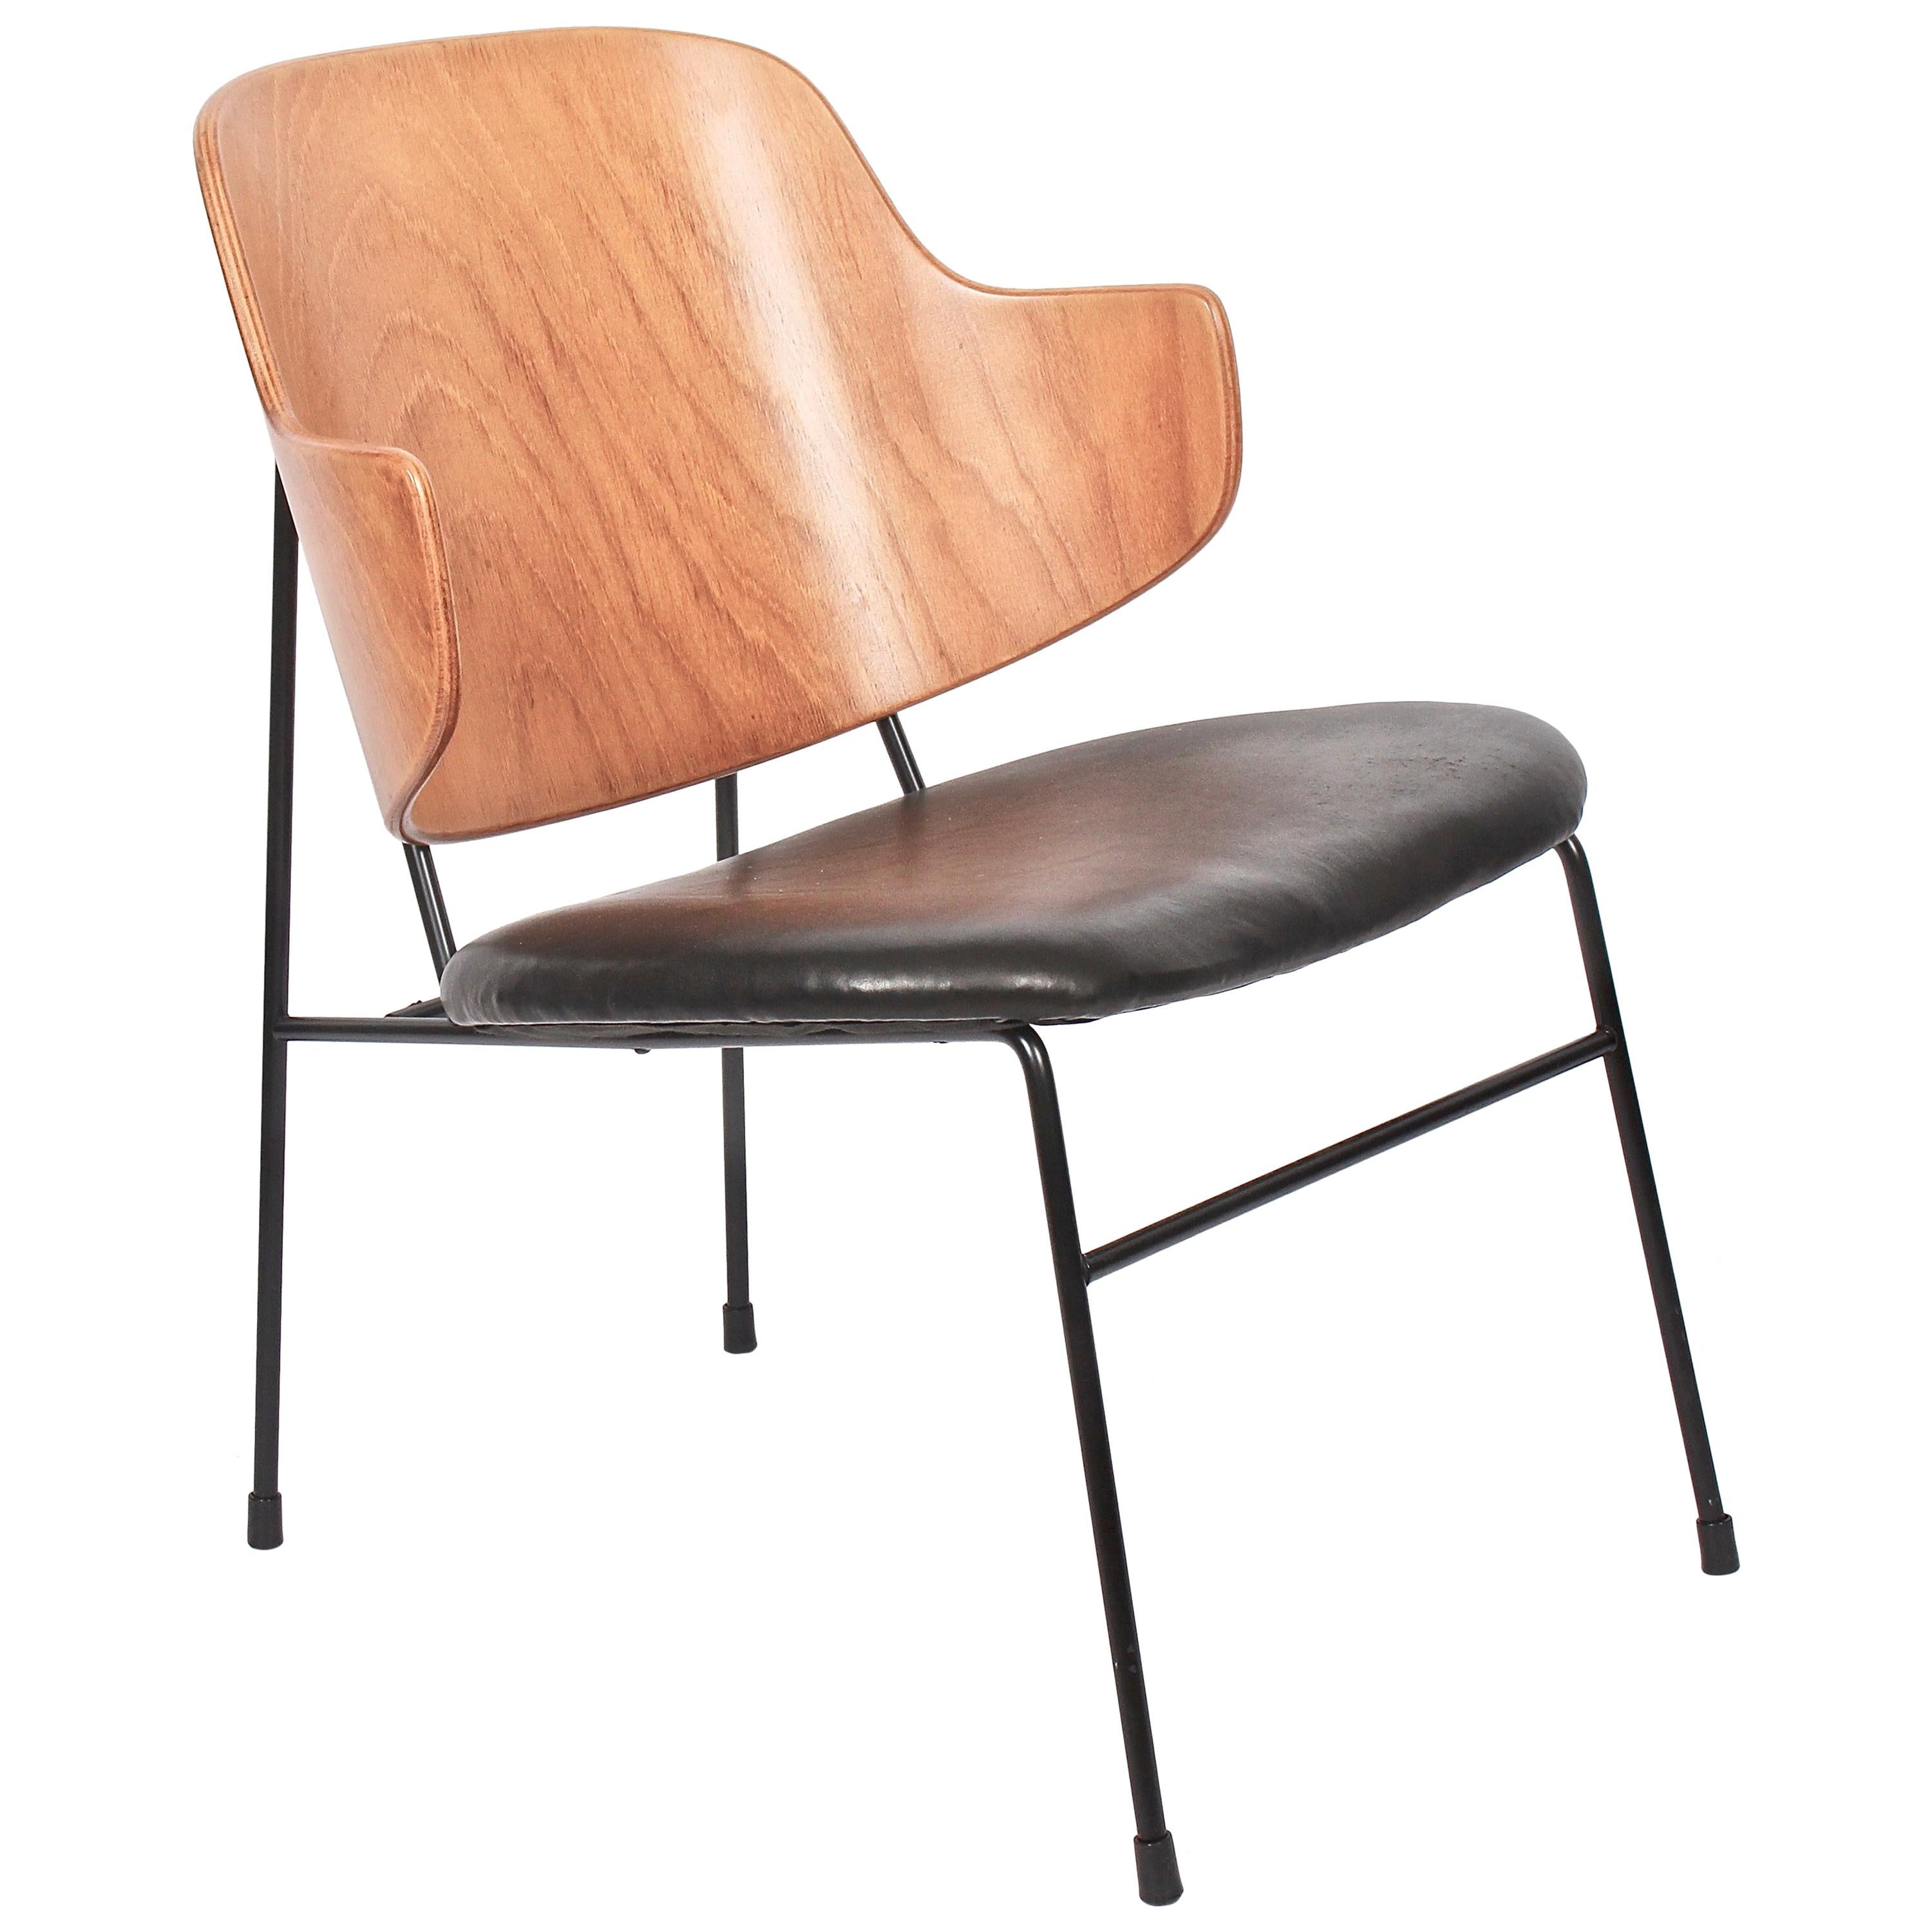 Ib Kofod-Larsen for Selig "Penguin" Chair, 1960s